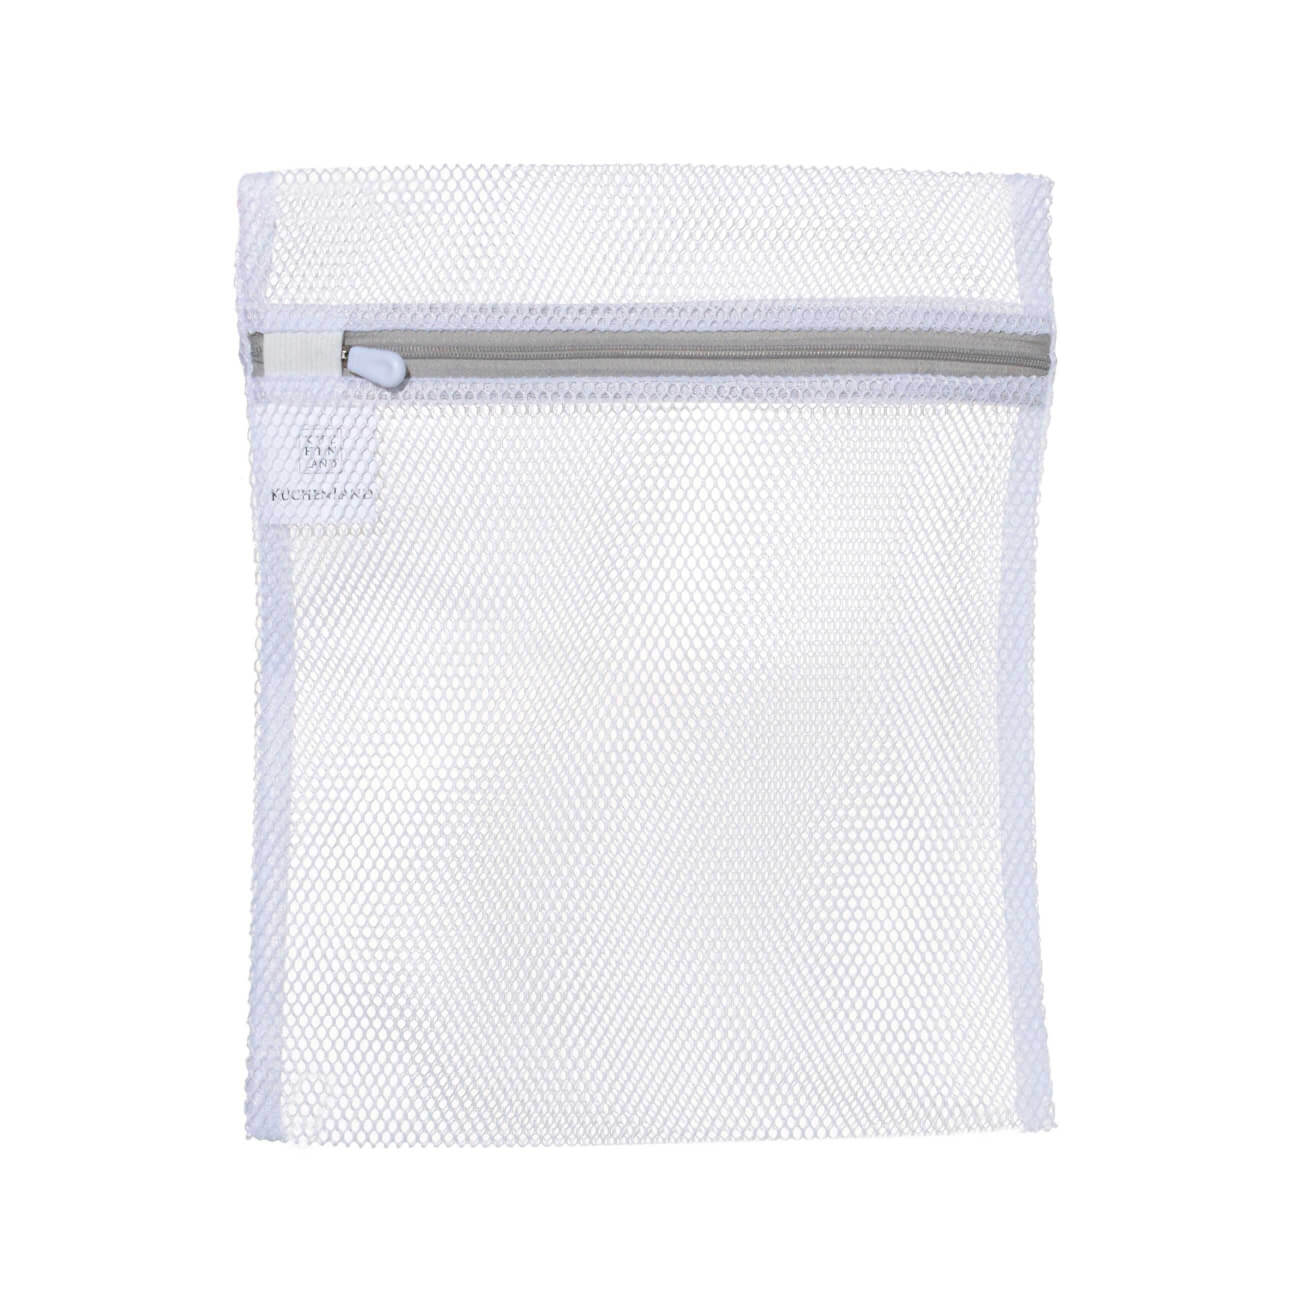 Мешок для стирки нижнего белья, 25х30 см, полиэстер, бело-серый, Safety мешок для стирки нижнего белья 25х30 см полиэстер бело серый safety